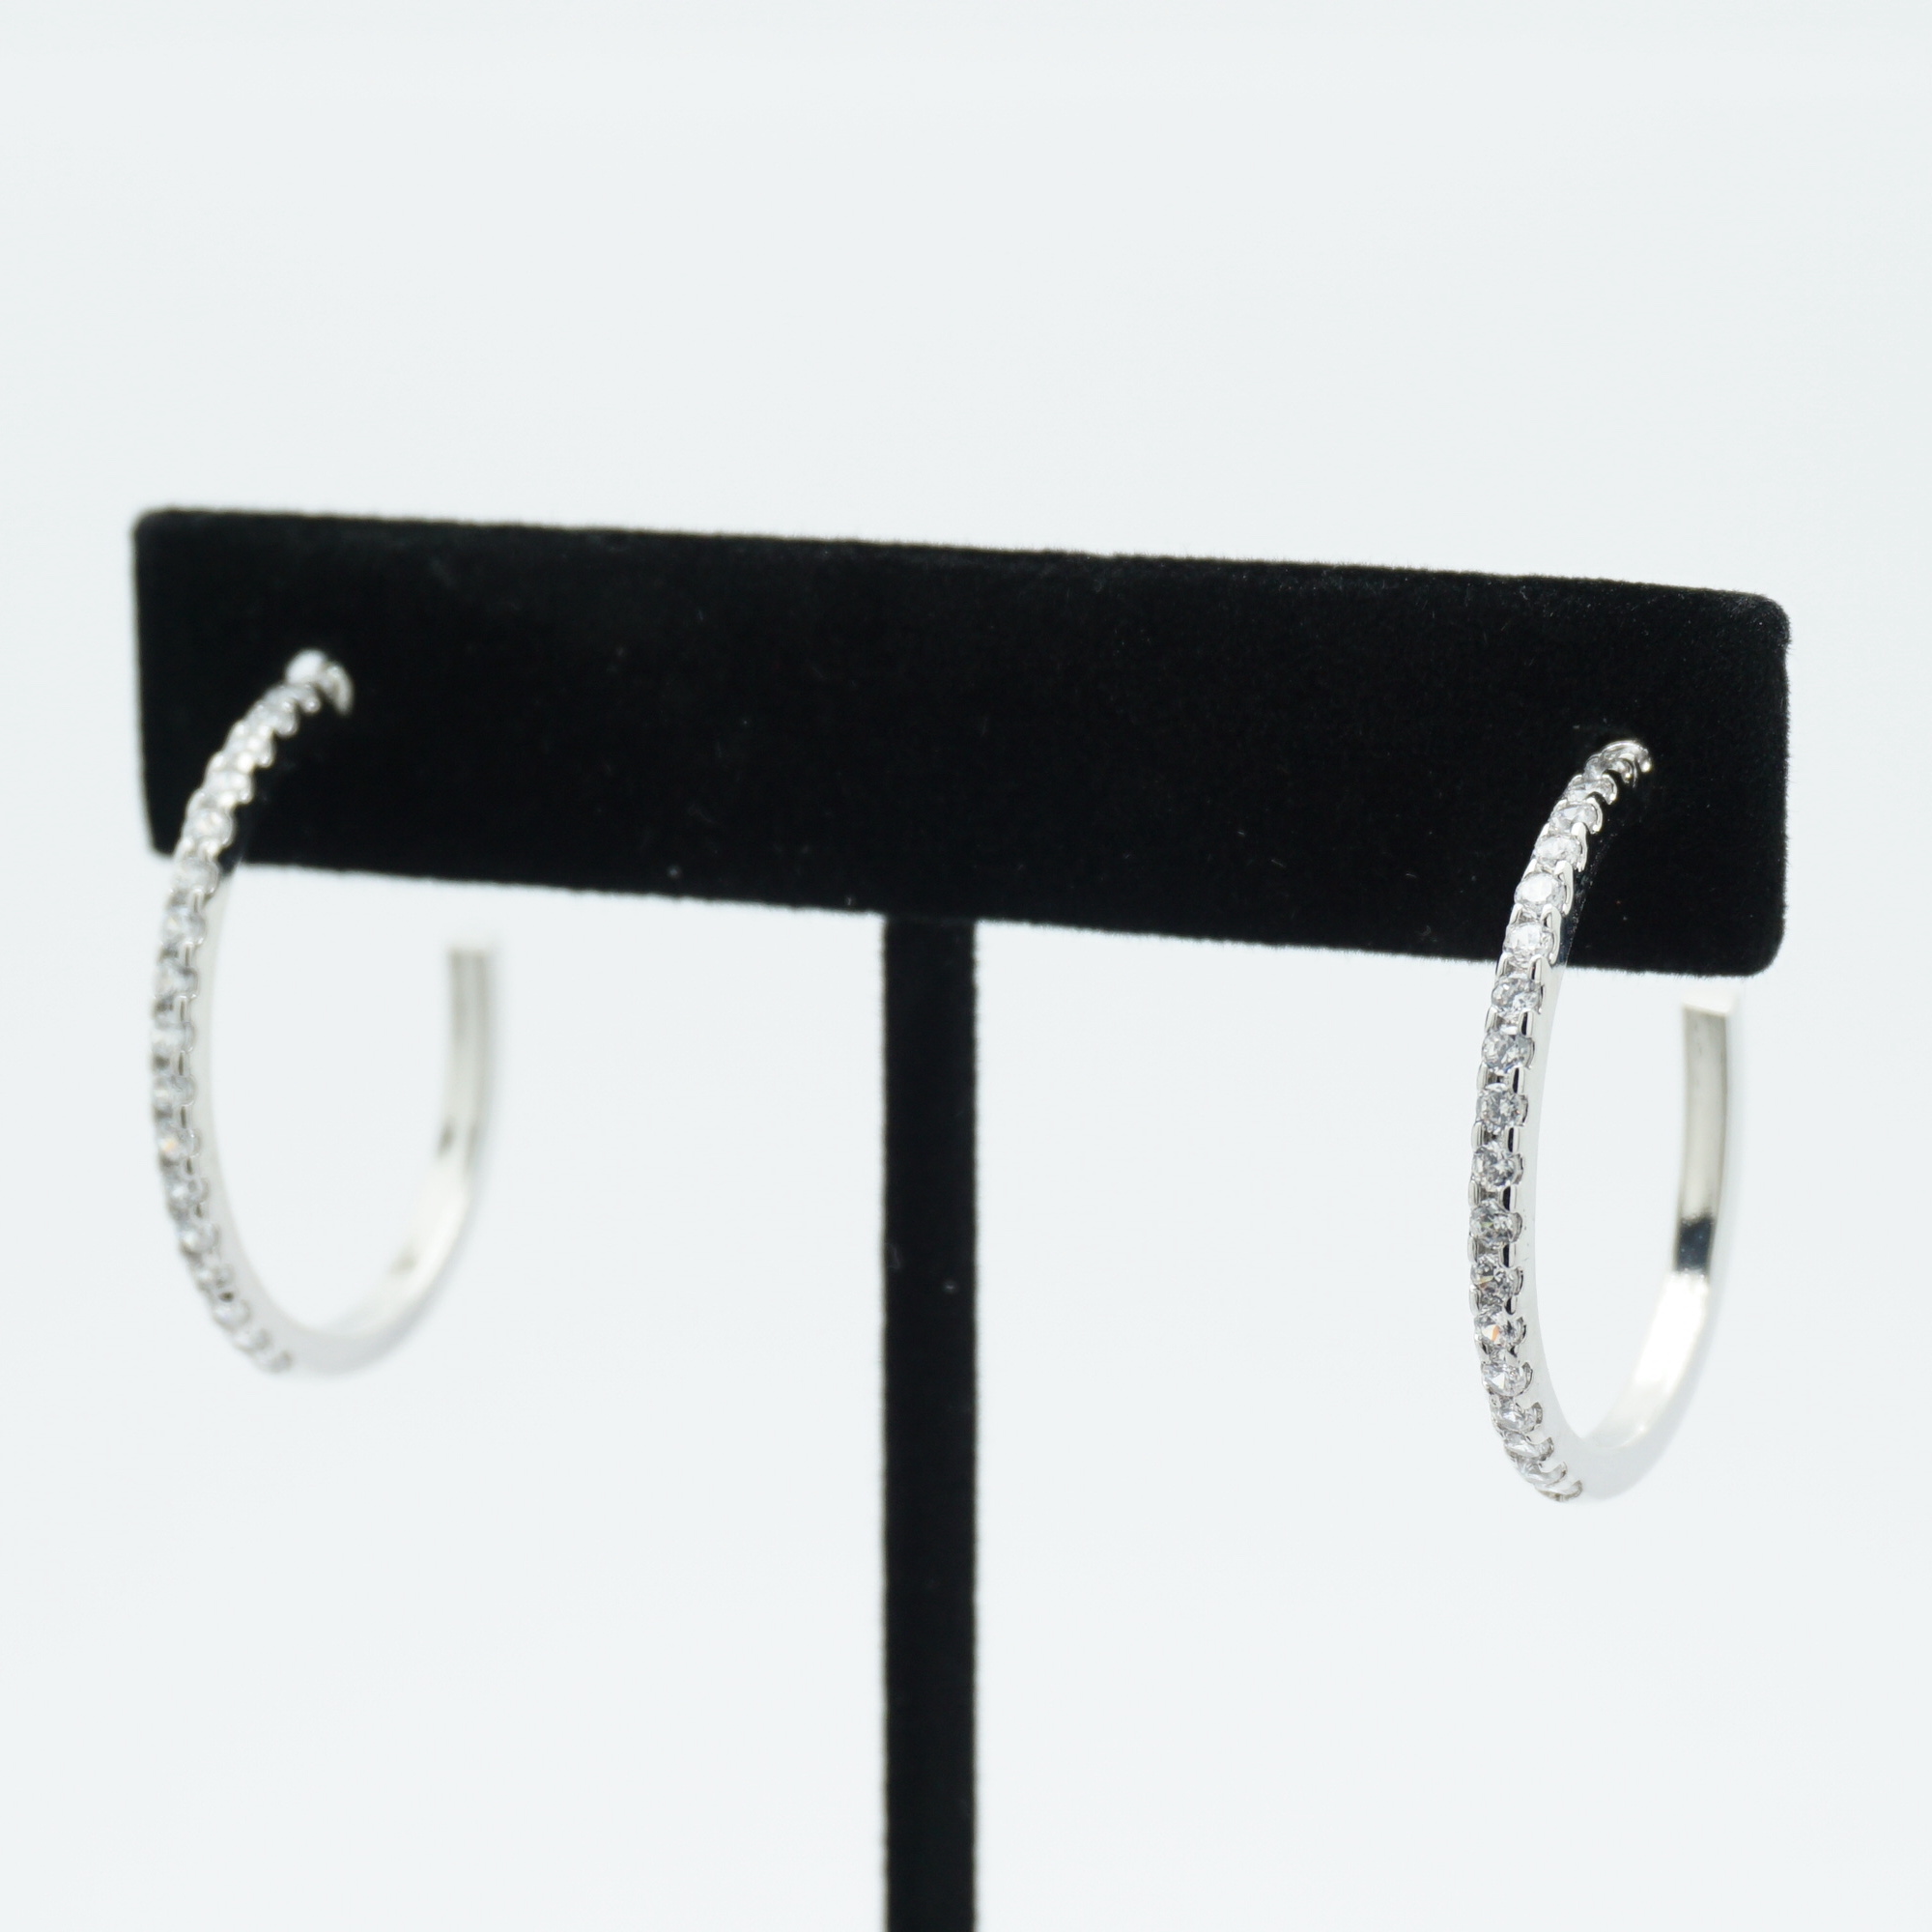 Skinny Crystal Hoop Earrings Medium in Silver on Stand